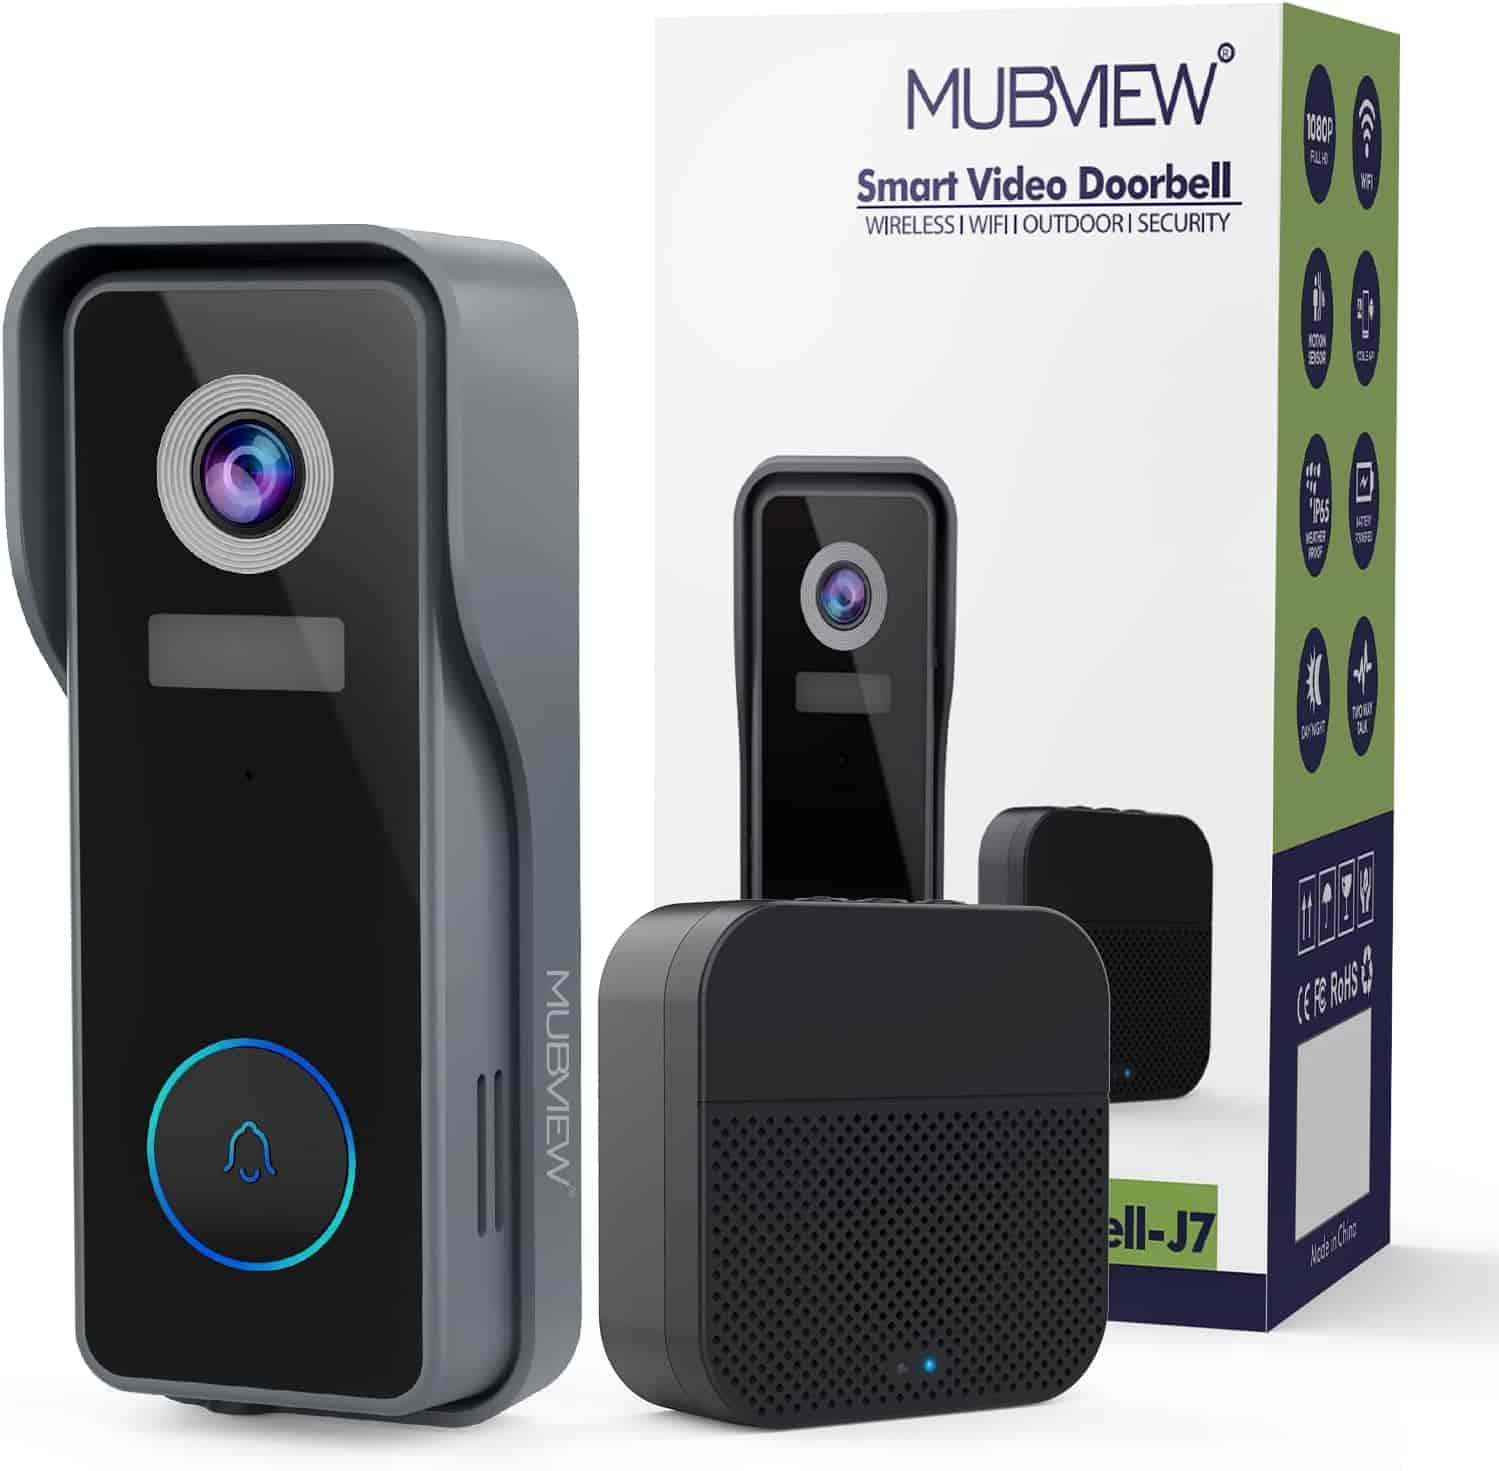 MUBVIEW-J7-video-doorbell-camera